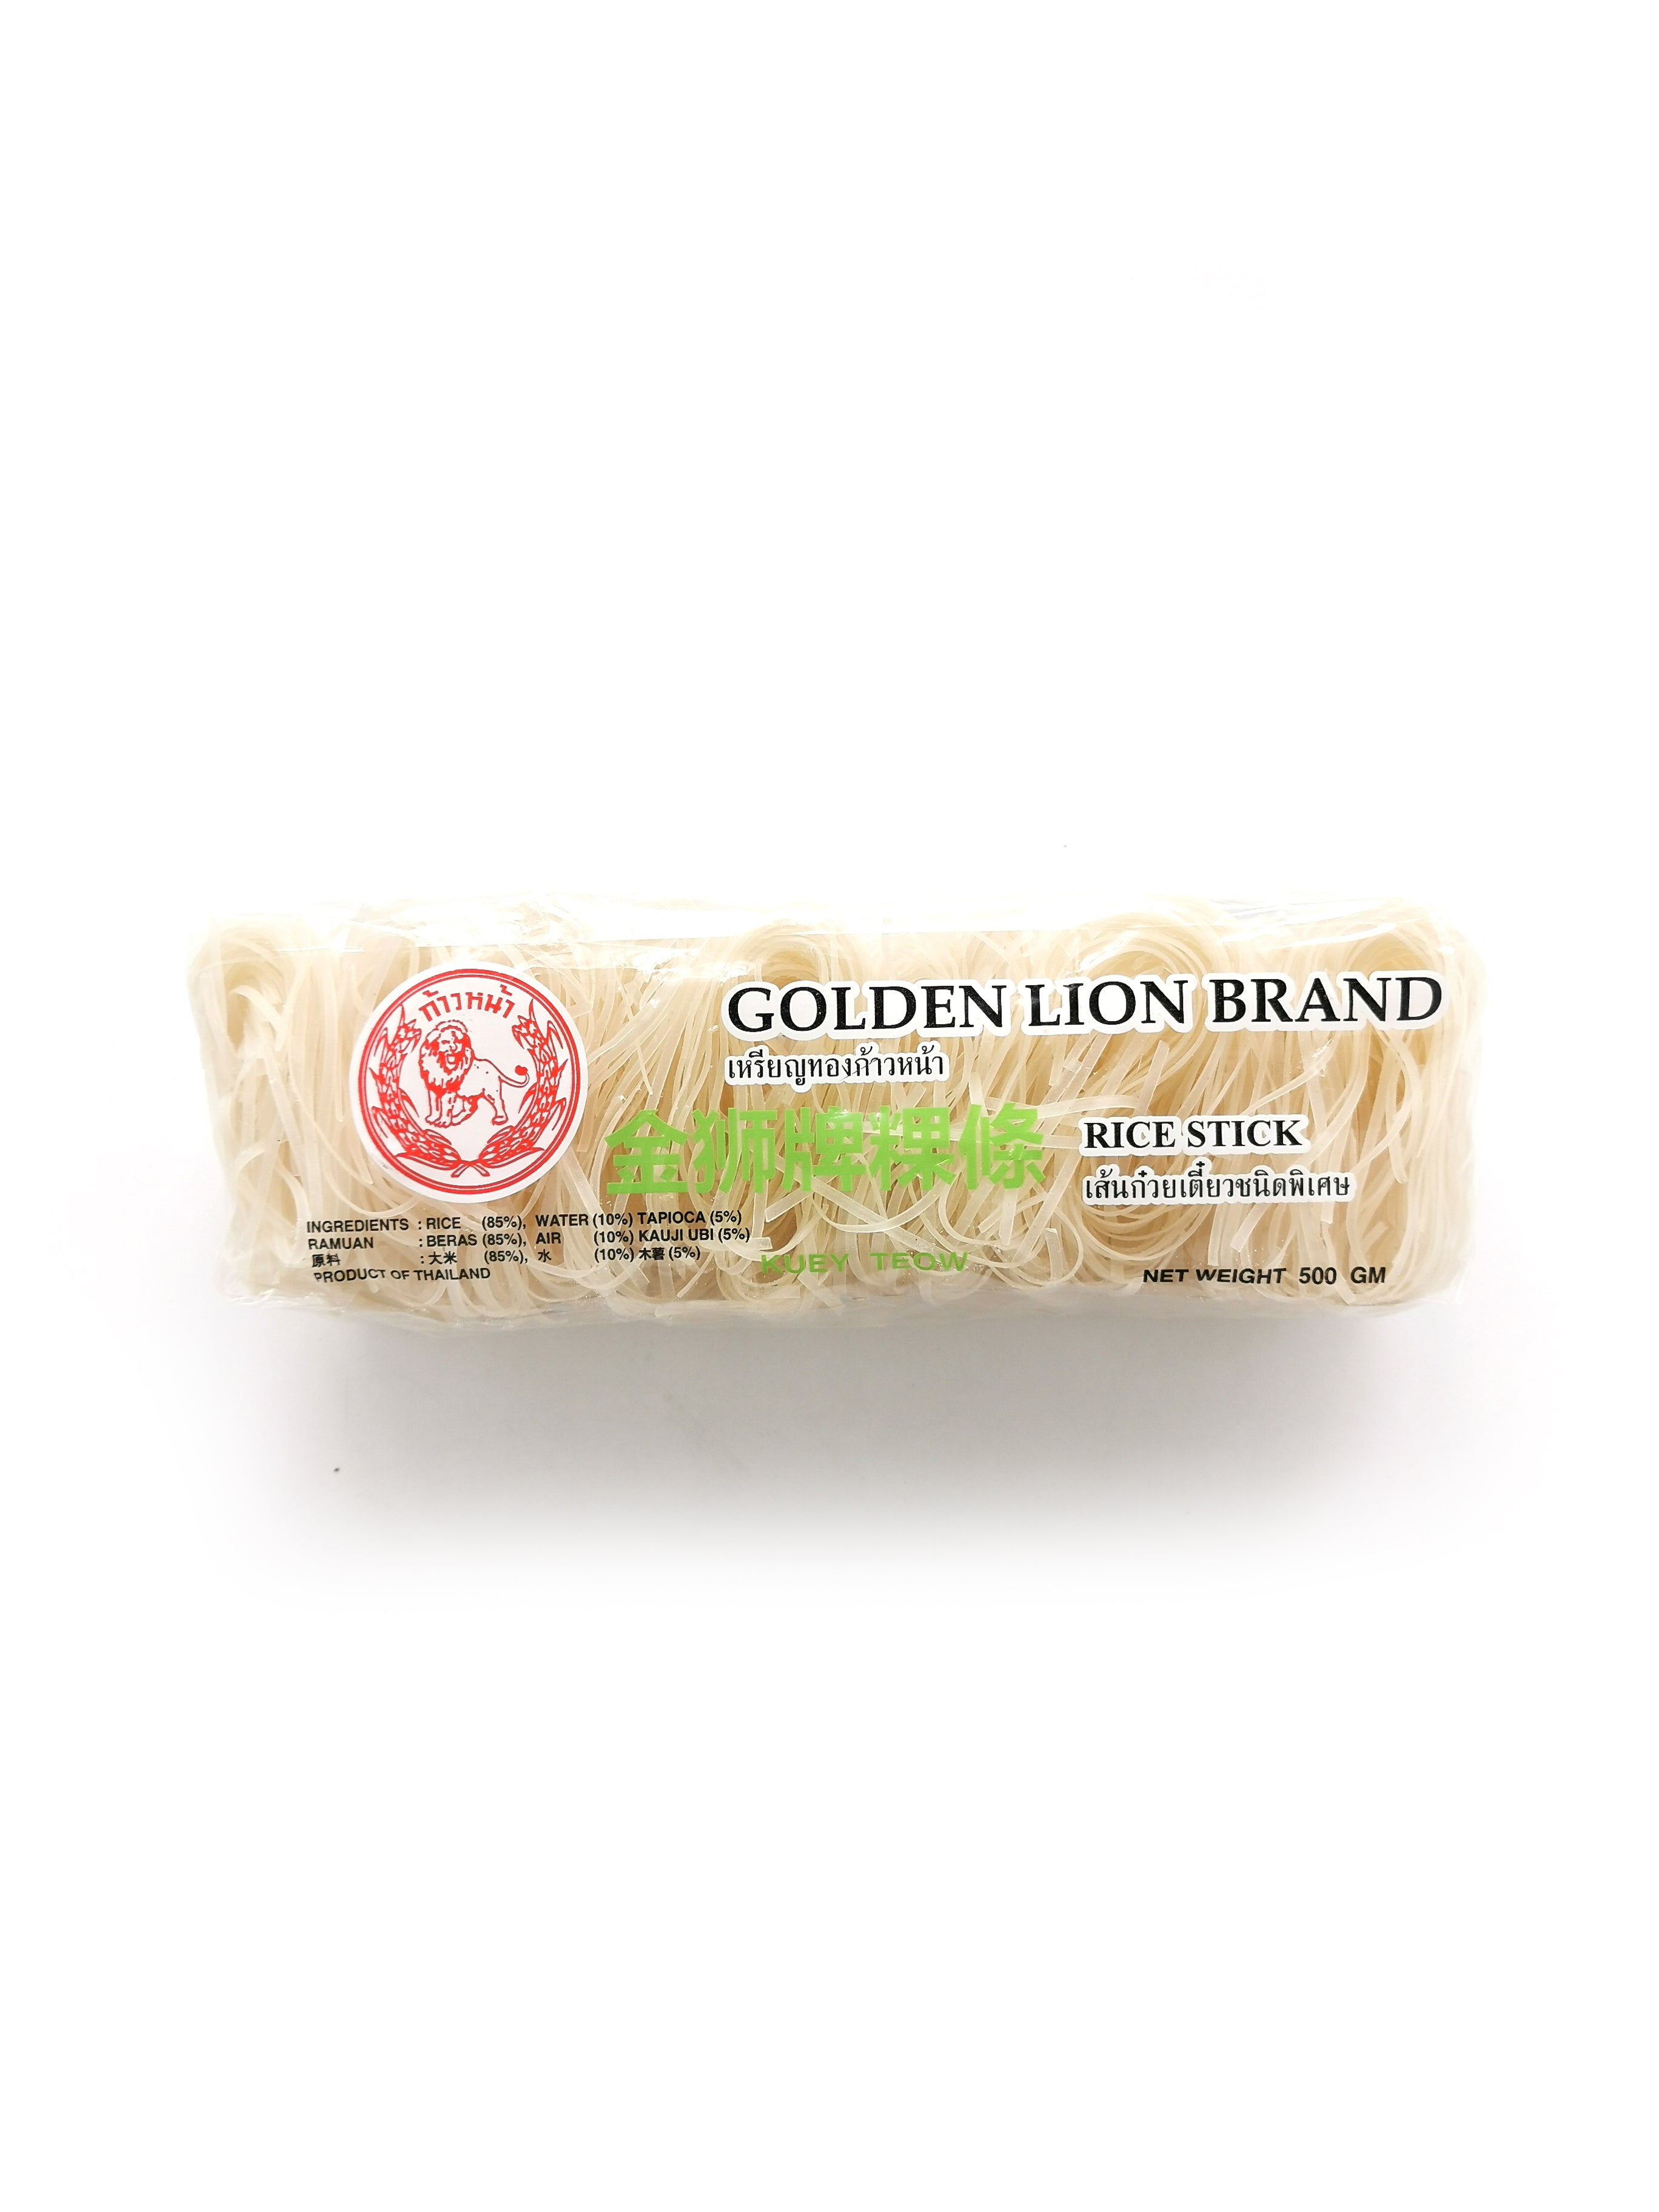 Golden Lion Brand Rice Stick Noodle